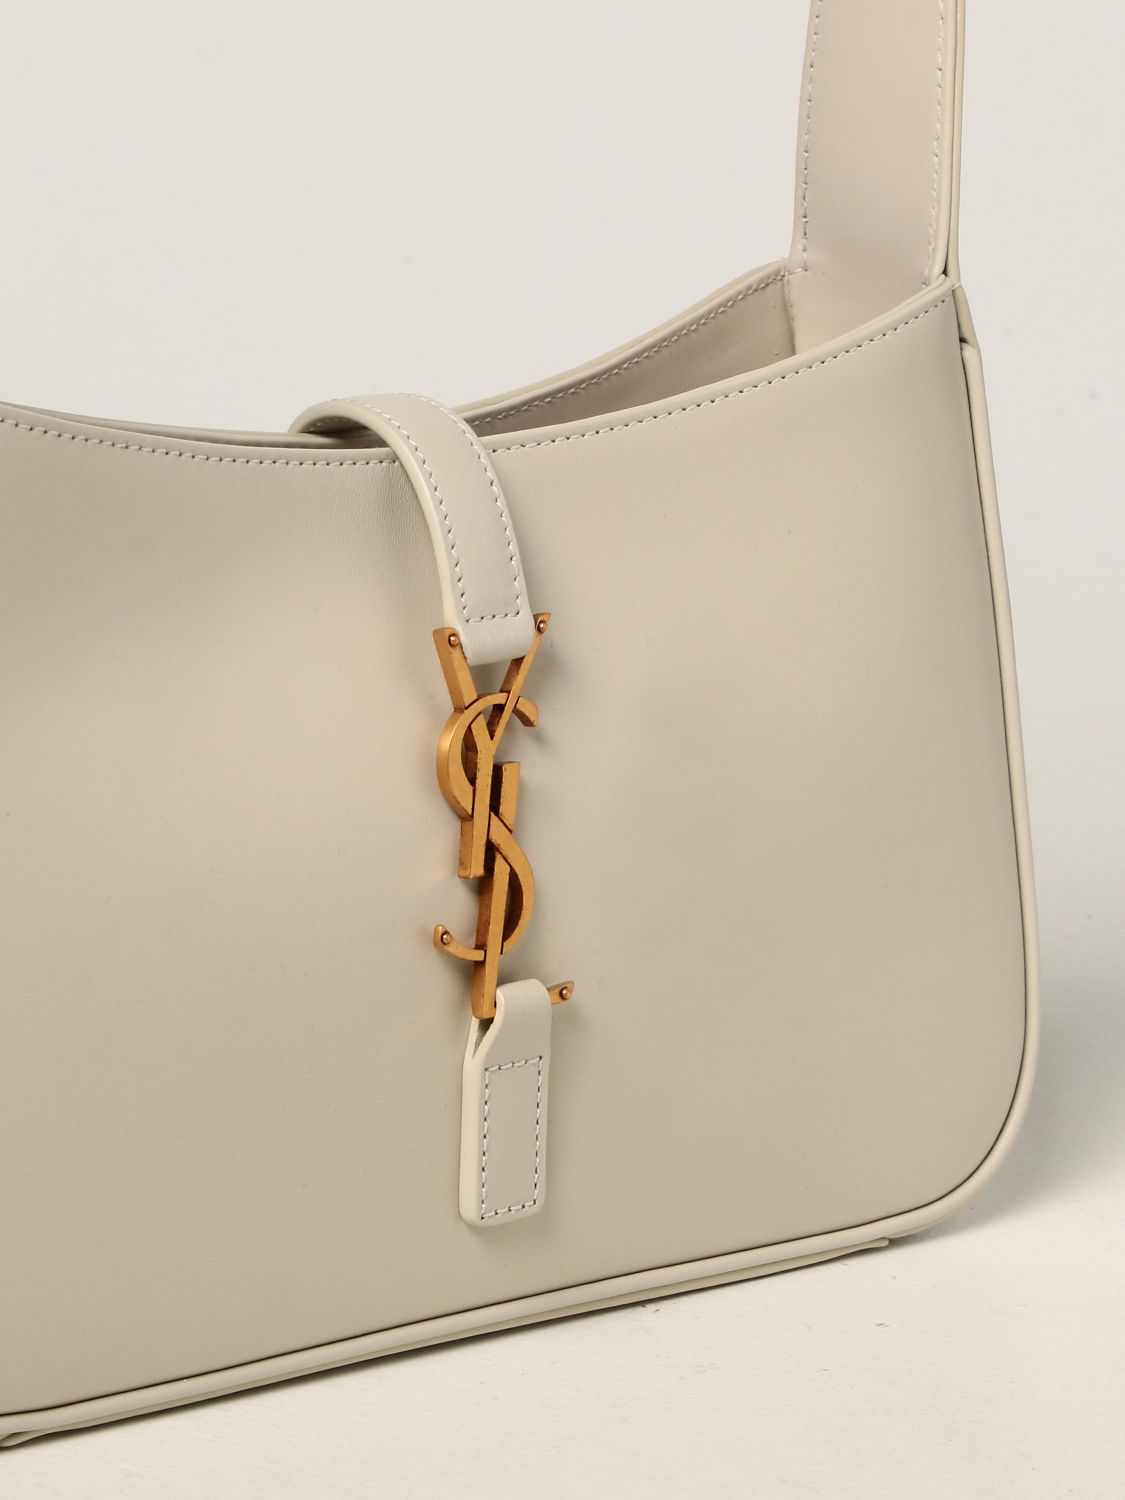 SAINT LAURENT: Hobo bag Le 5 à 7 in leather - Yellow Cream  Saint Laurent  shoulder bag 657228 2R20W online at